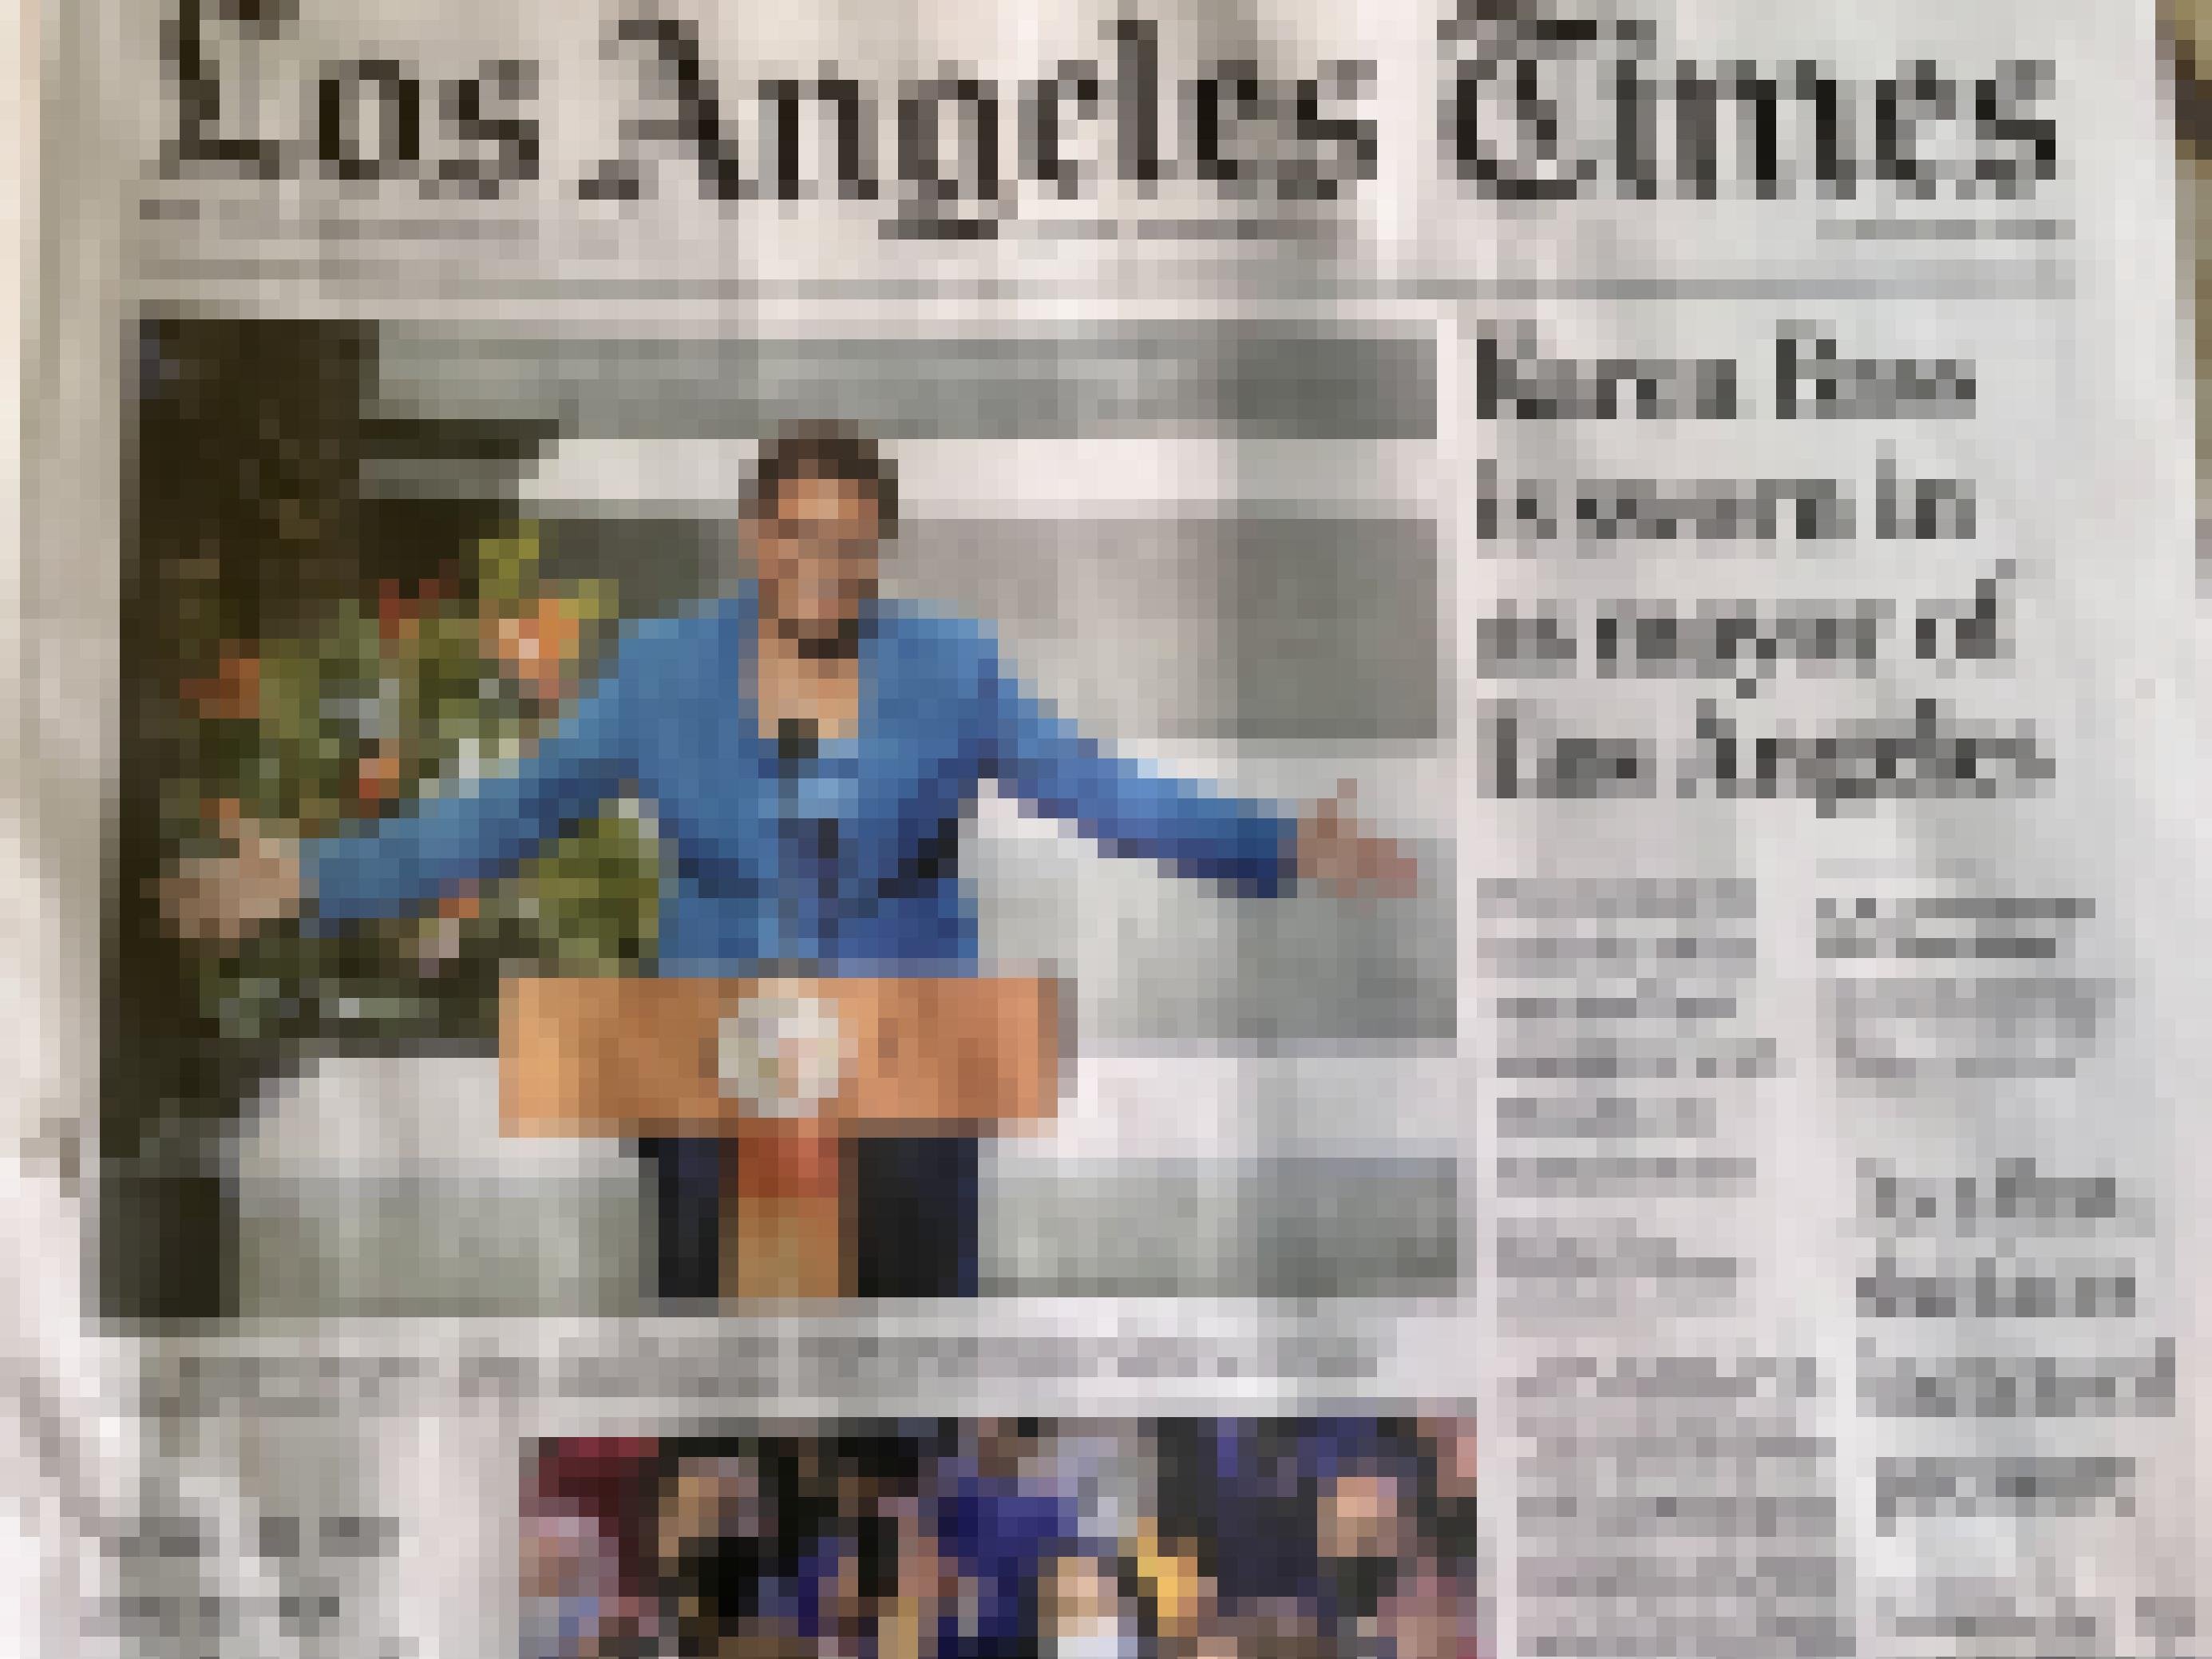 Erste Seite der Los Angeles, ein Foto von Karen Bass am Rednerpult – 69 Jahre, blauer Hosenanzug, kurzer Afro, Brille streckt die Arme wie zur Umarmung aus.